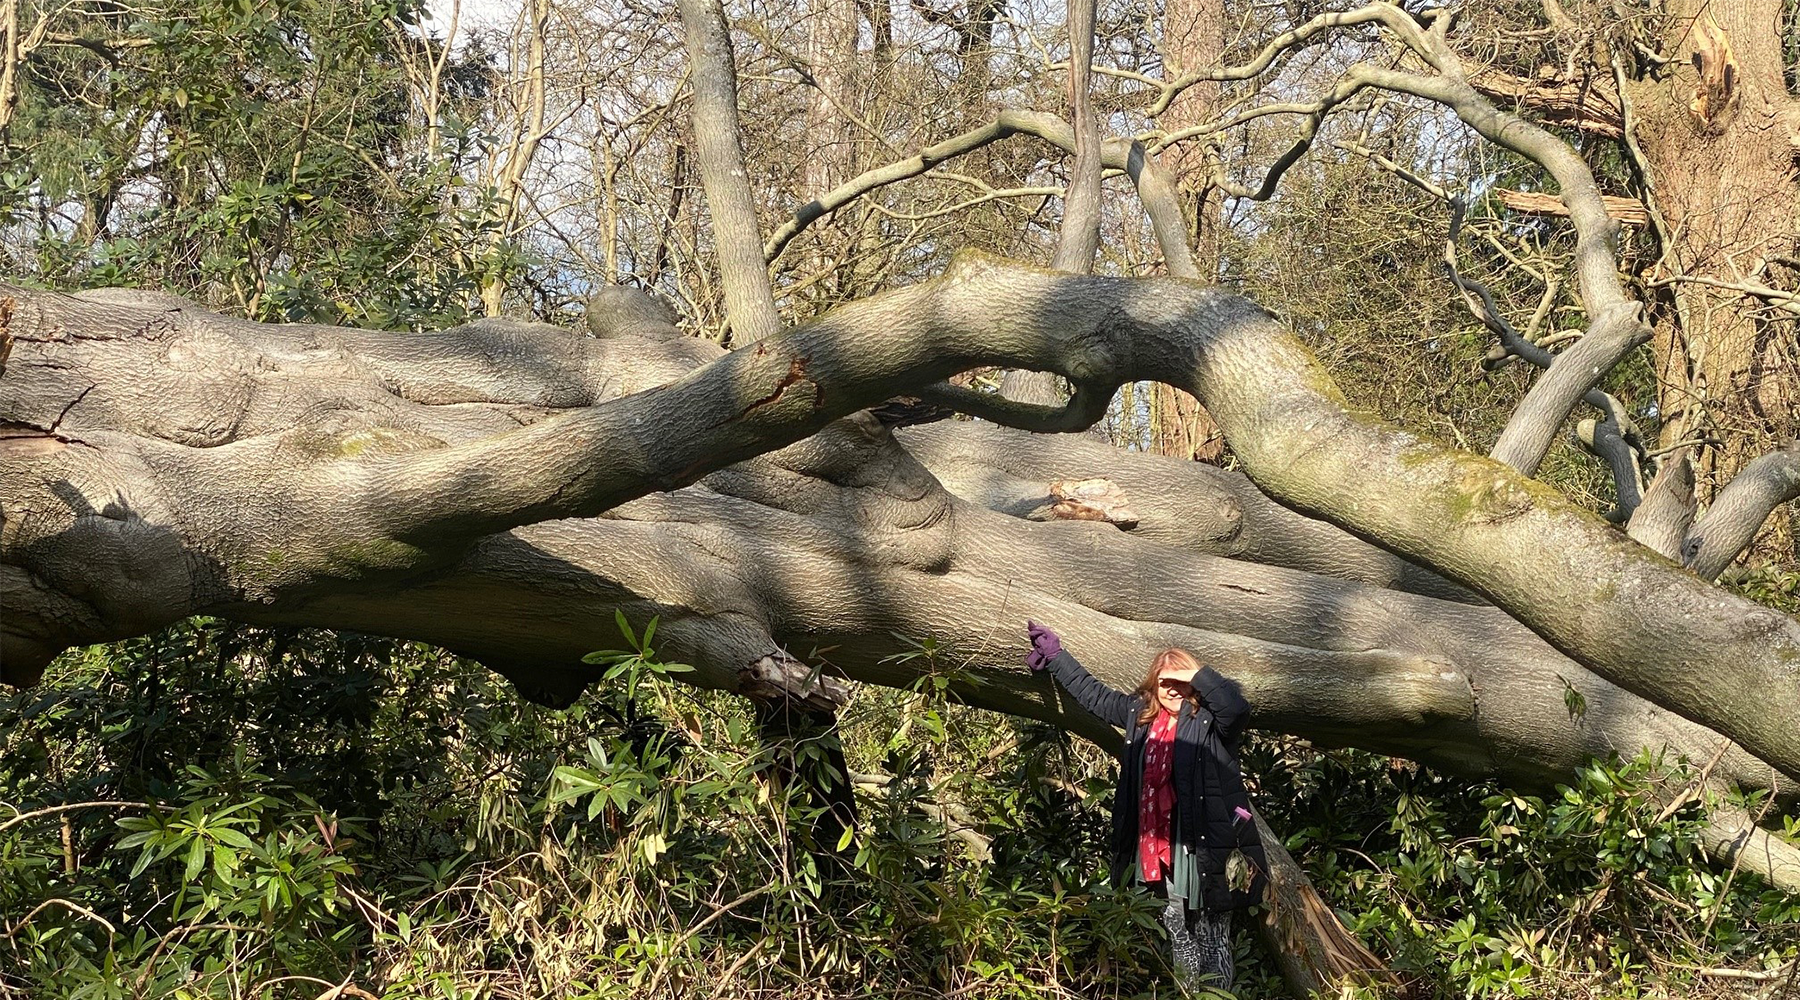 Debbie with a fallen tree